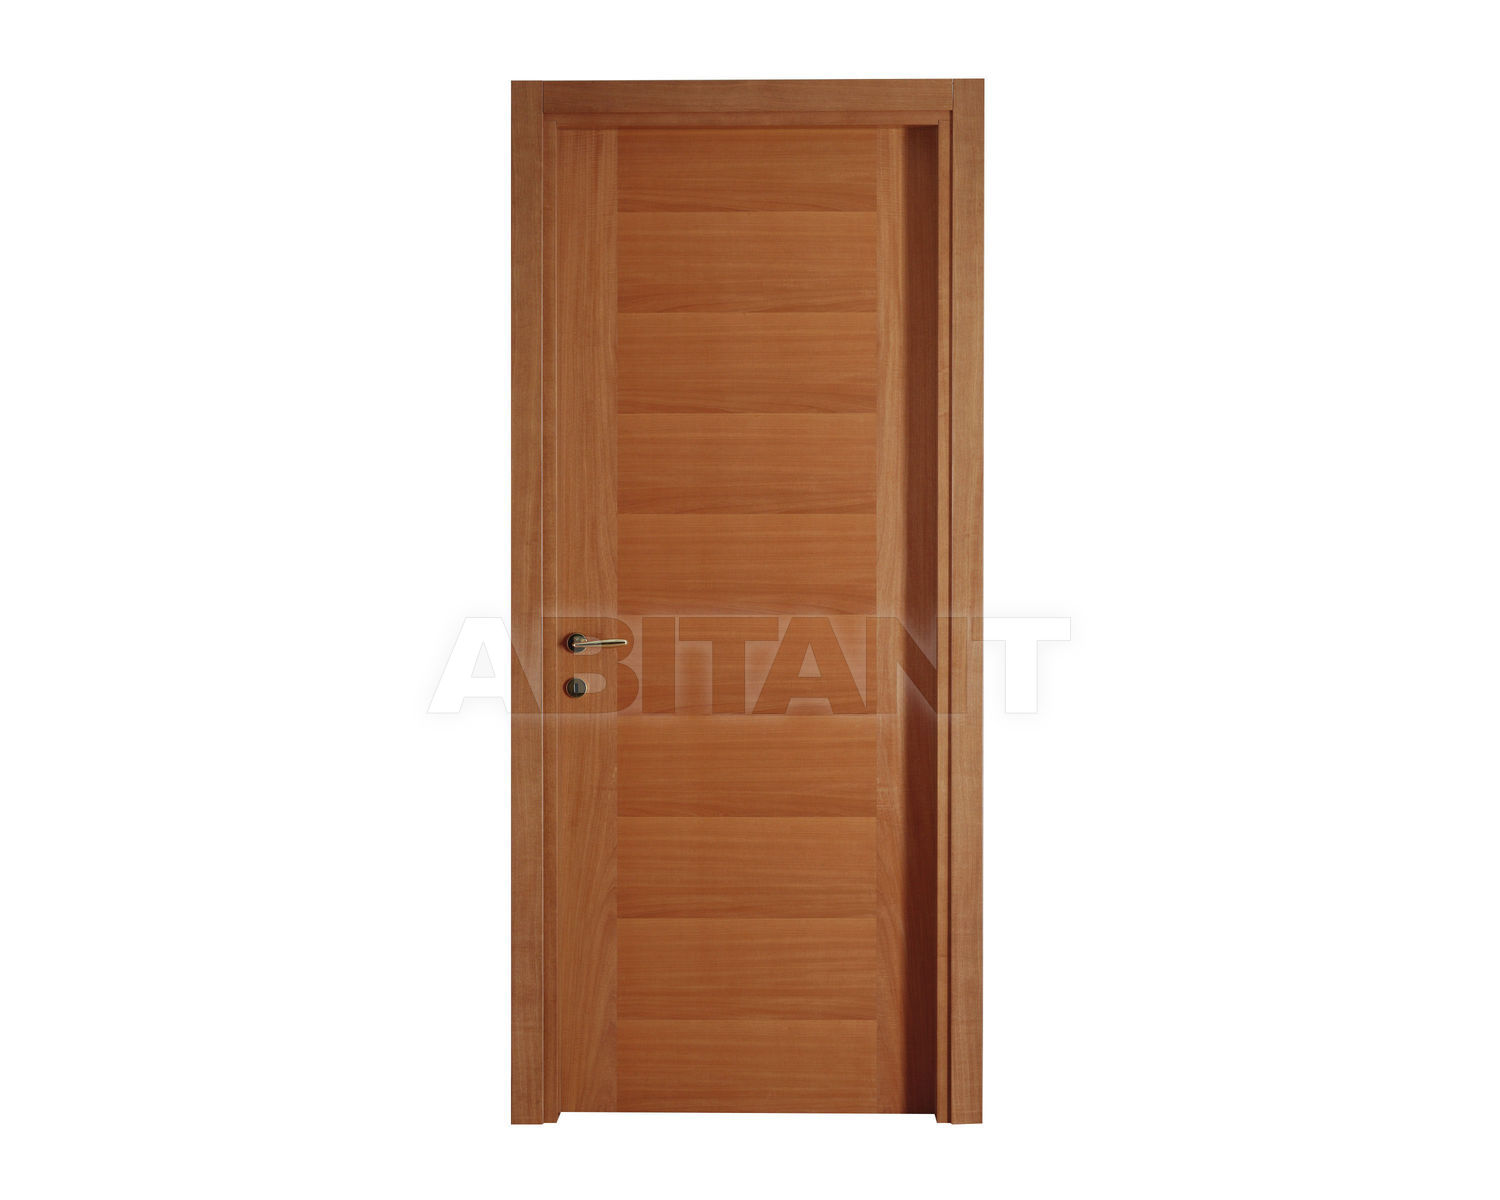 Купить Дверь деревянная Geronazzo F.lli snc Porte 50/FT